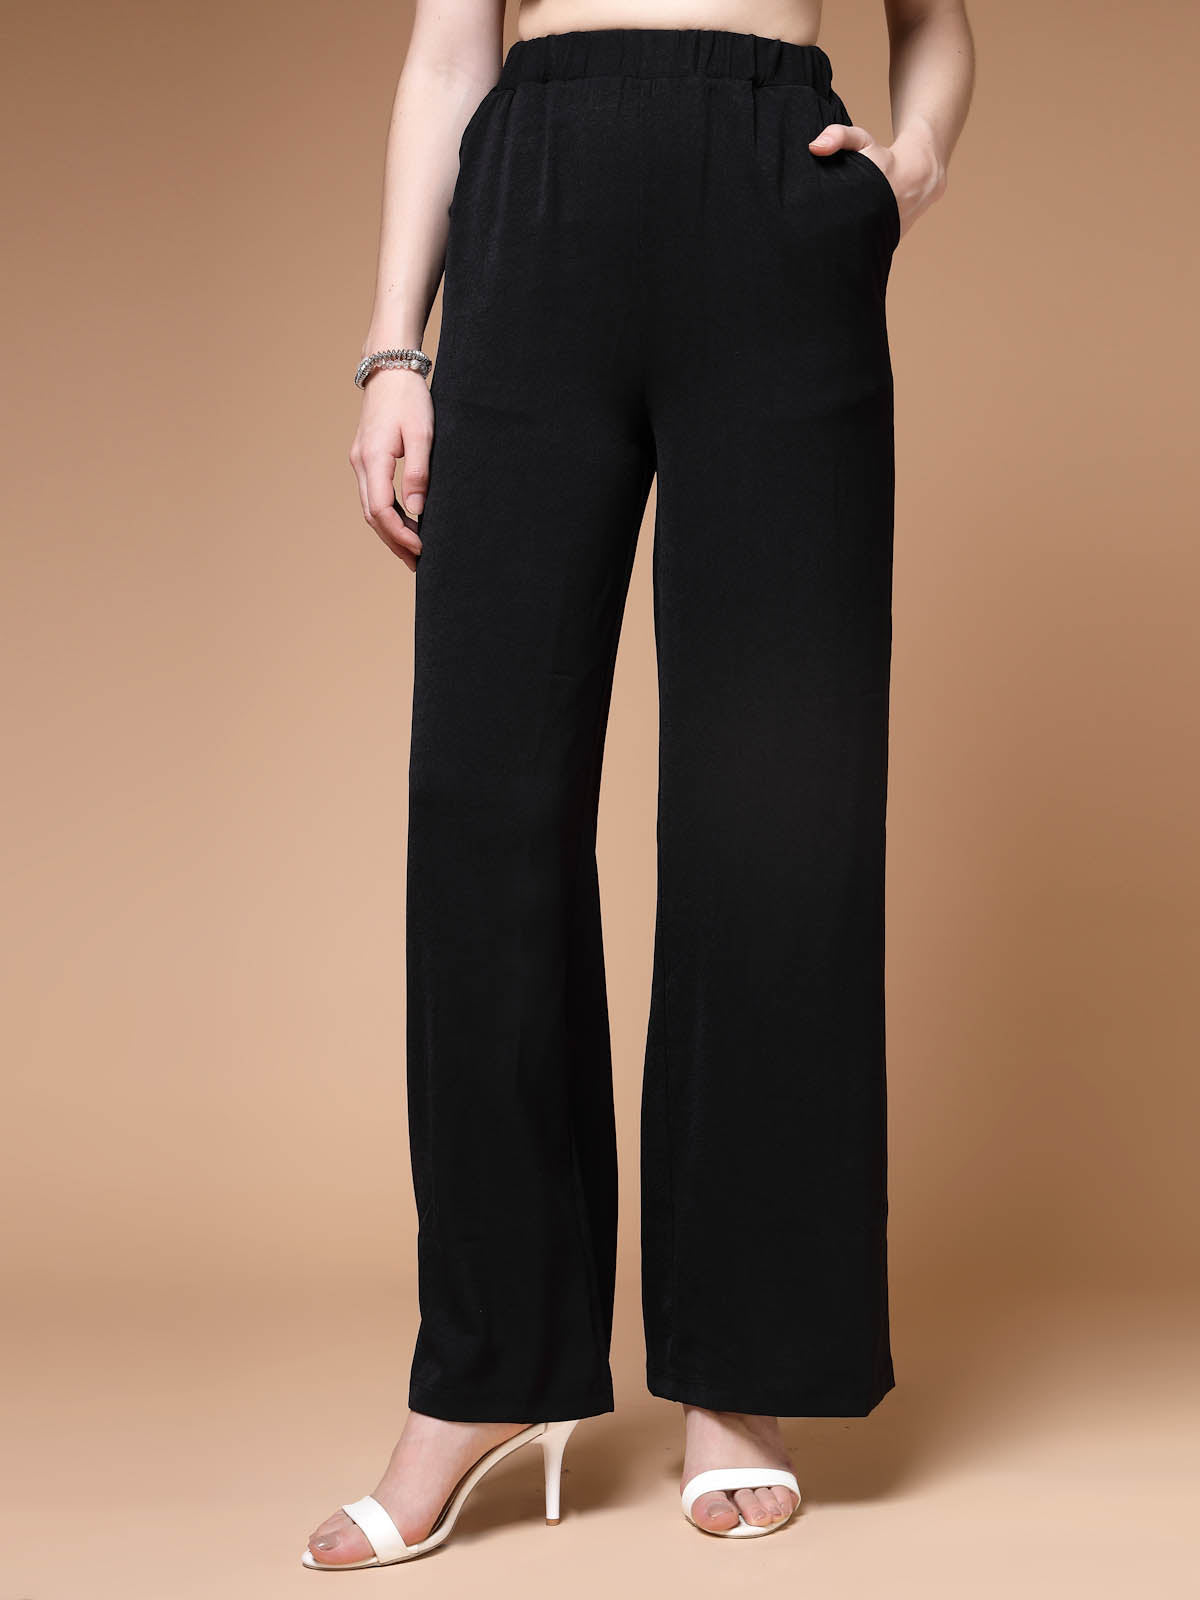 Buy Dark Grey Printed Parallel Pants Online - W for Woman